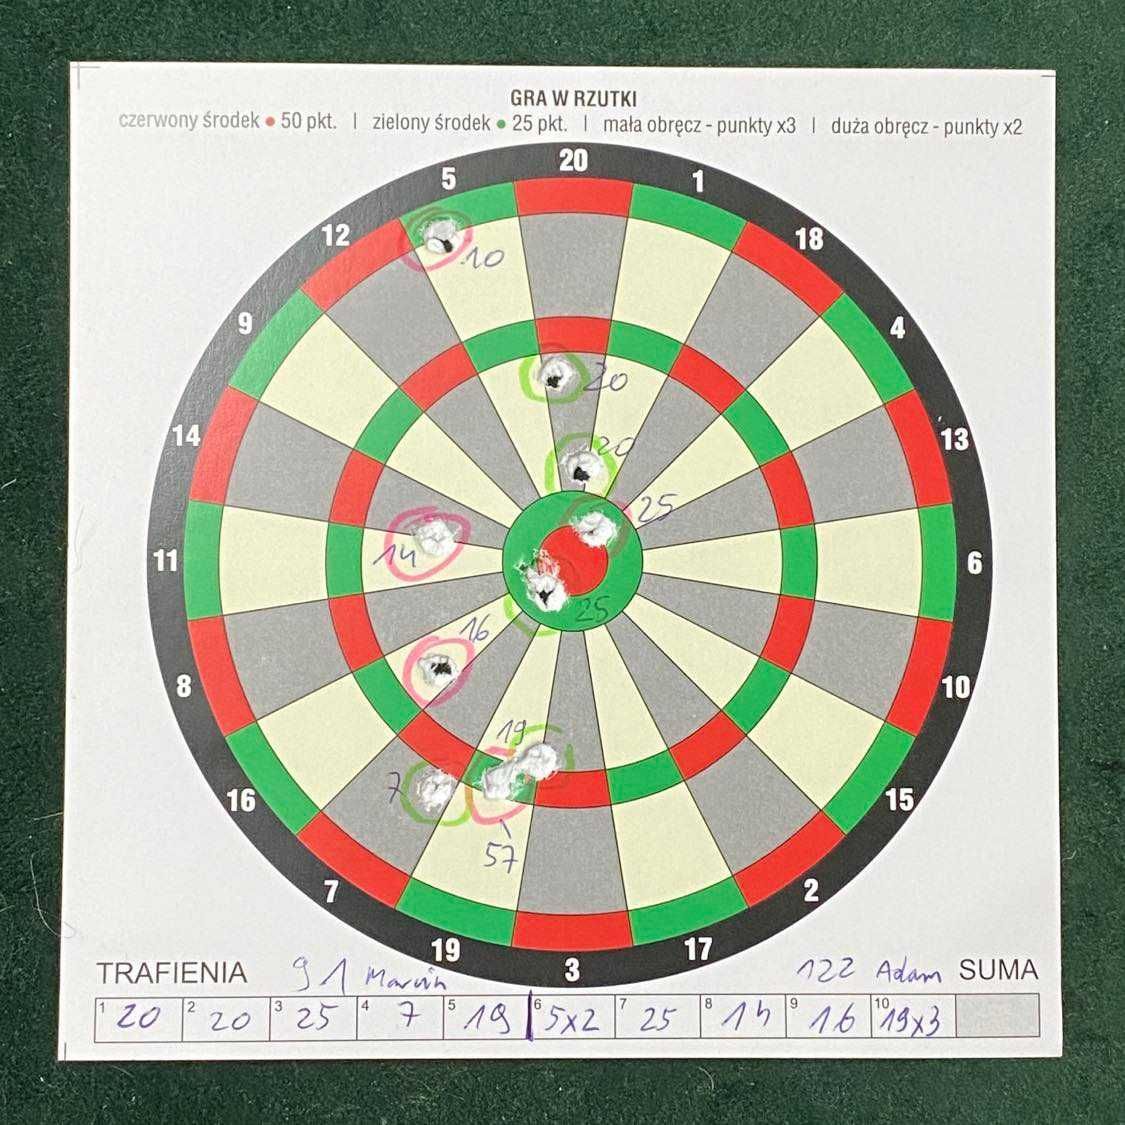 Tarcze strzeleckie do wiatrówki - gra w rzutki darts (30 sztuk)